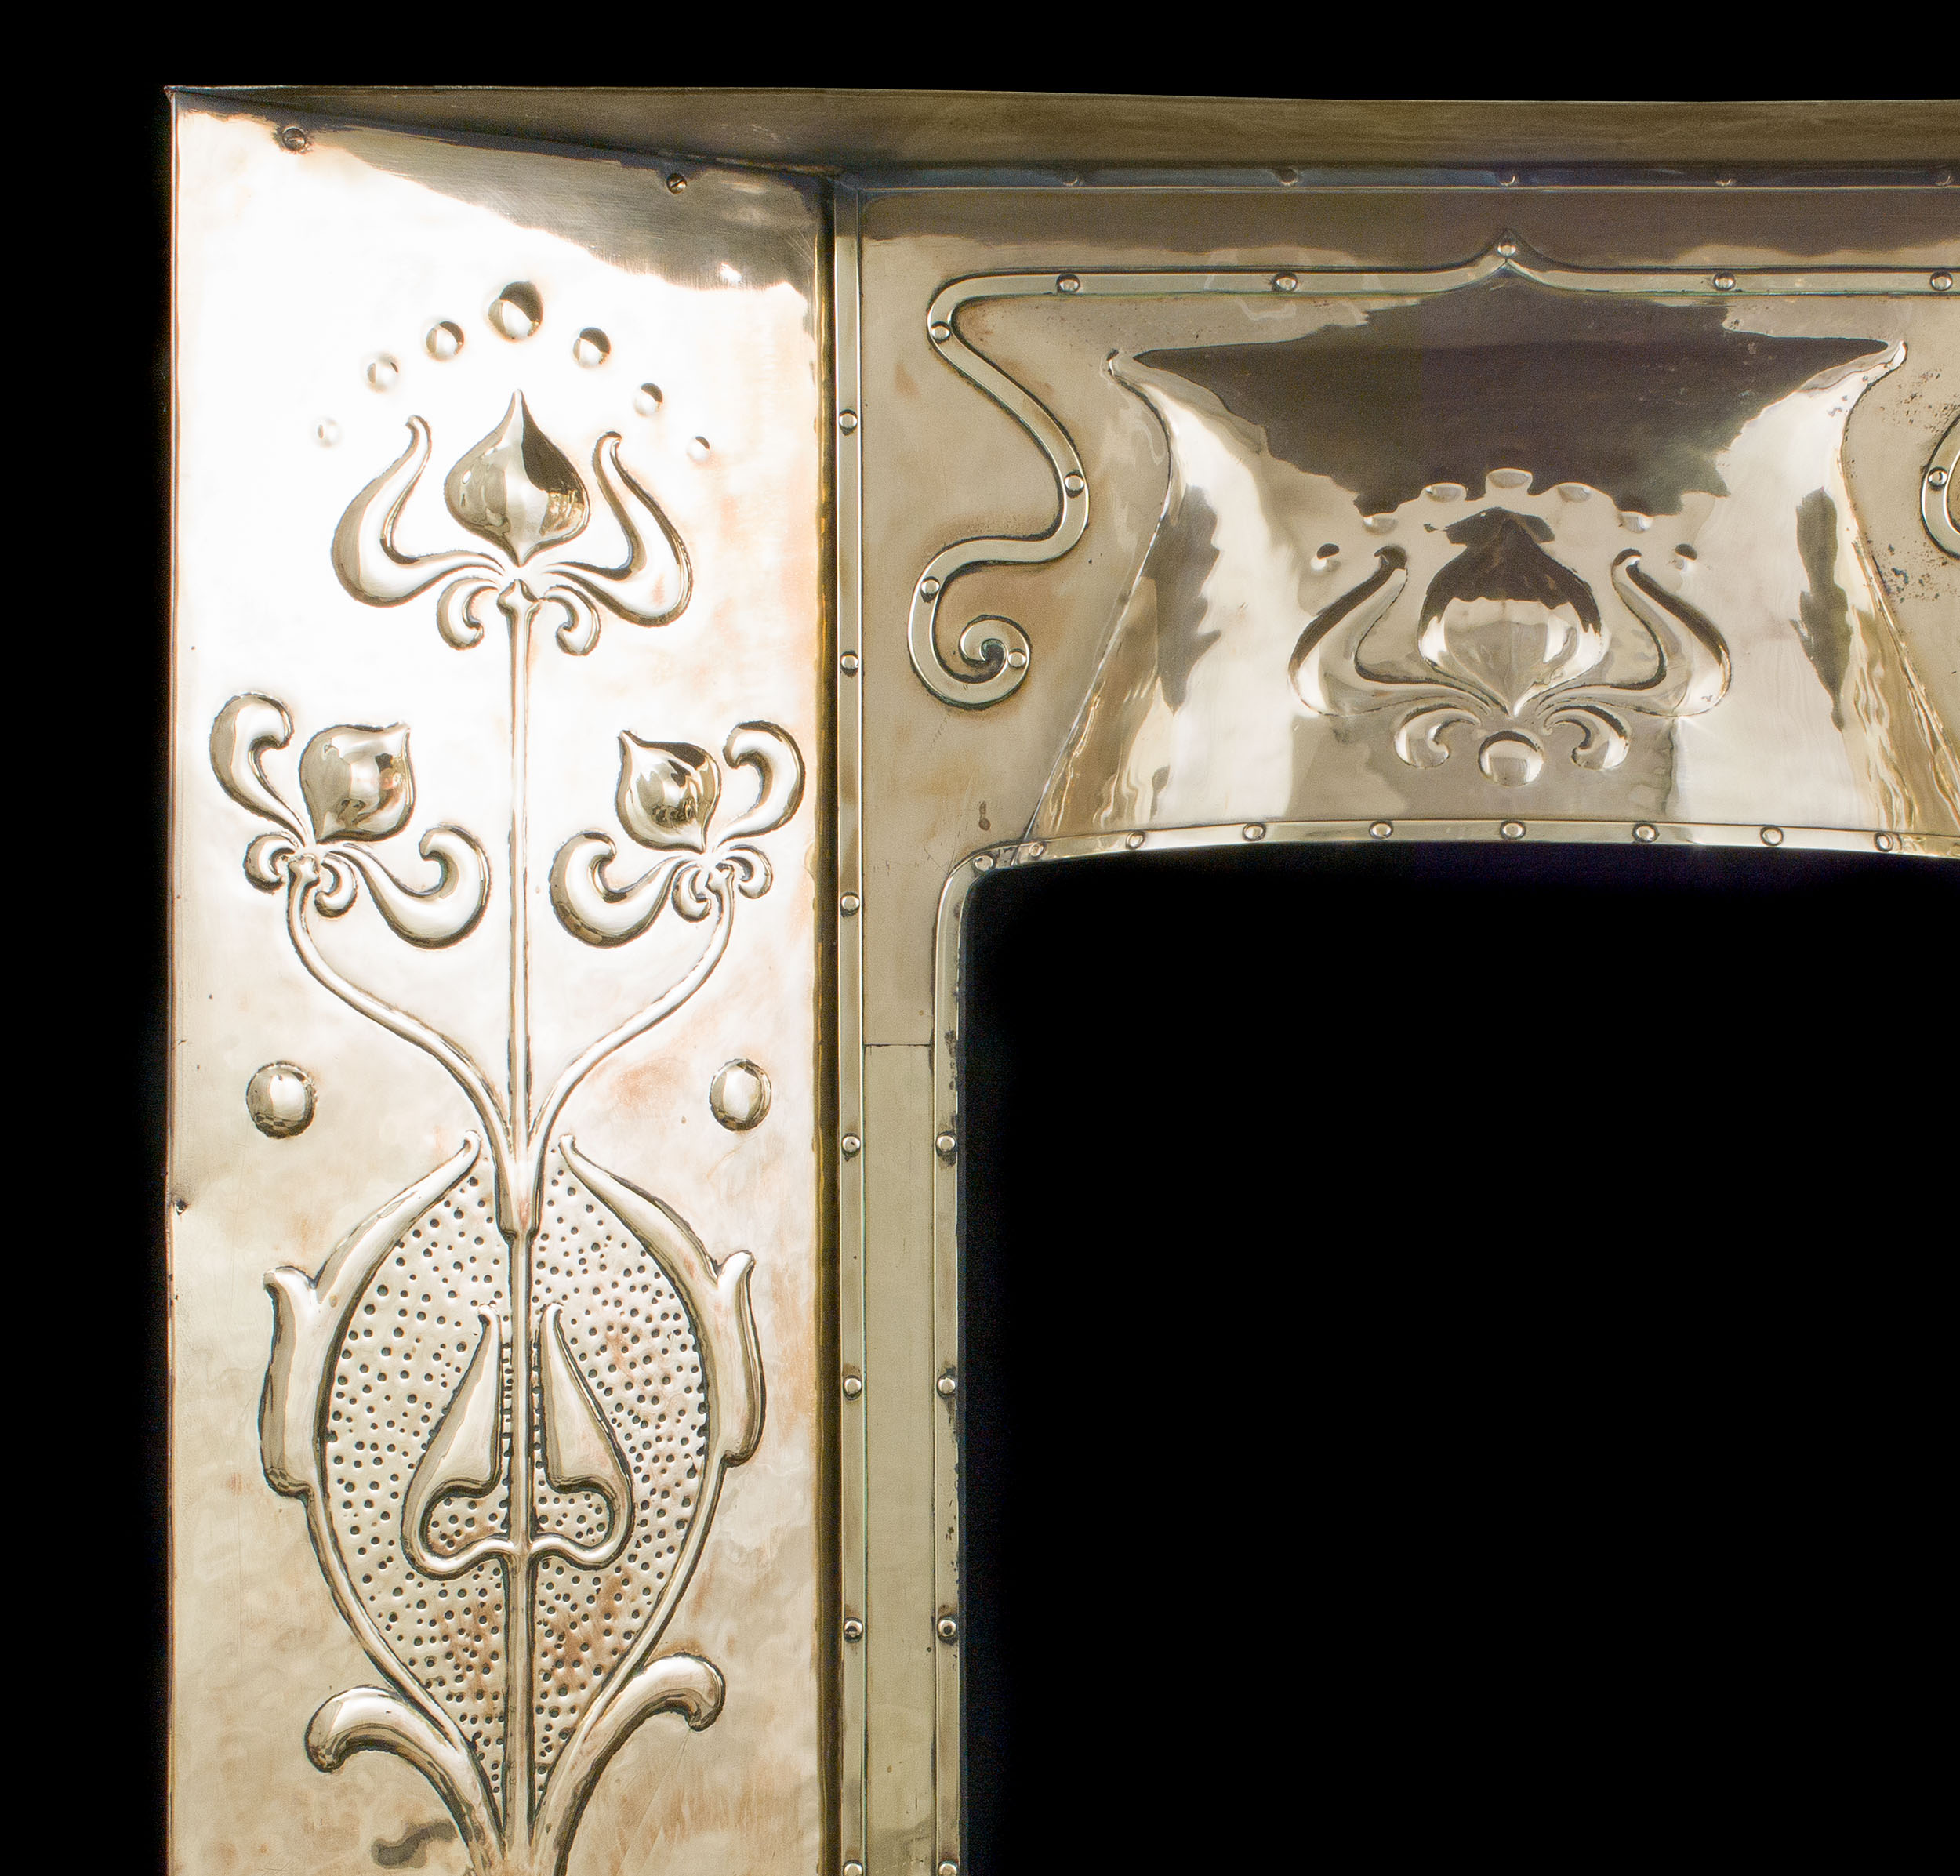 A Brass Art Nouveau Fireplace Insert